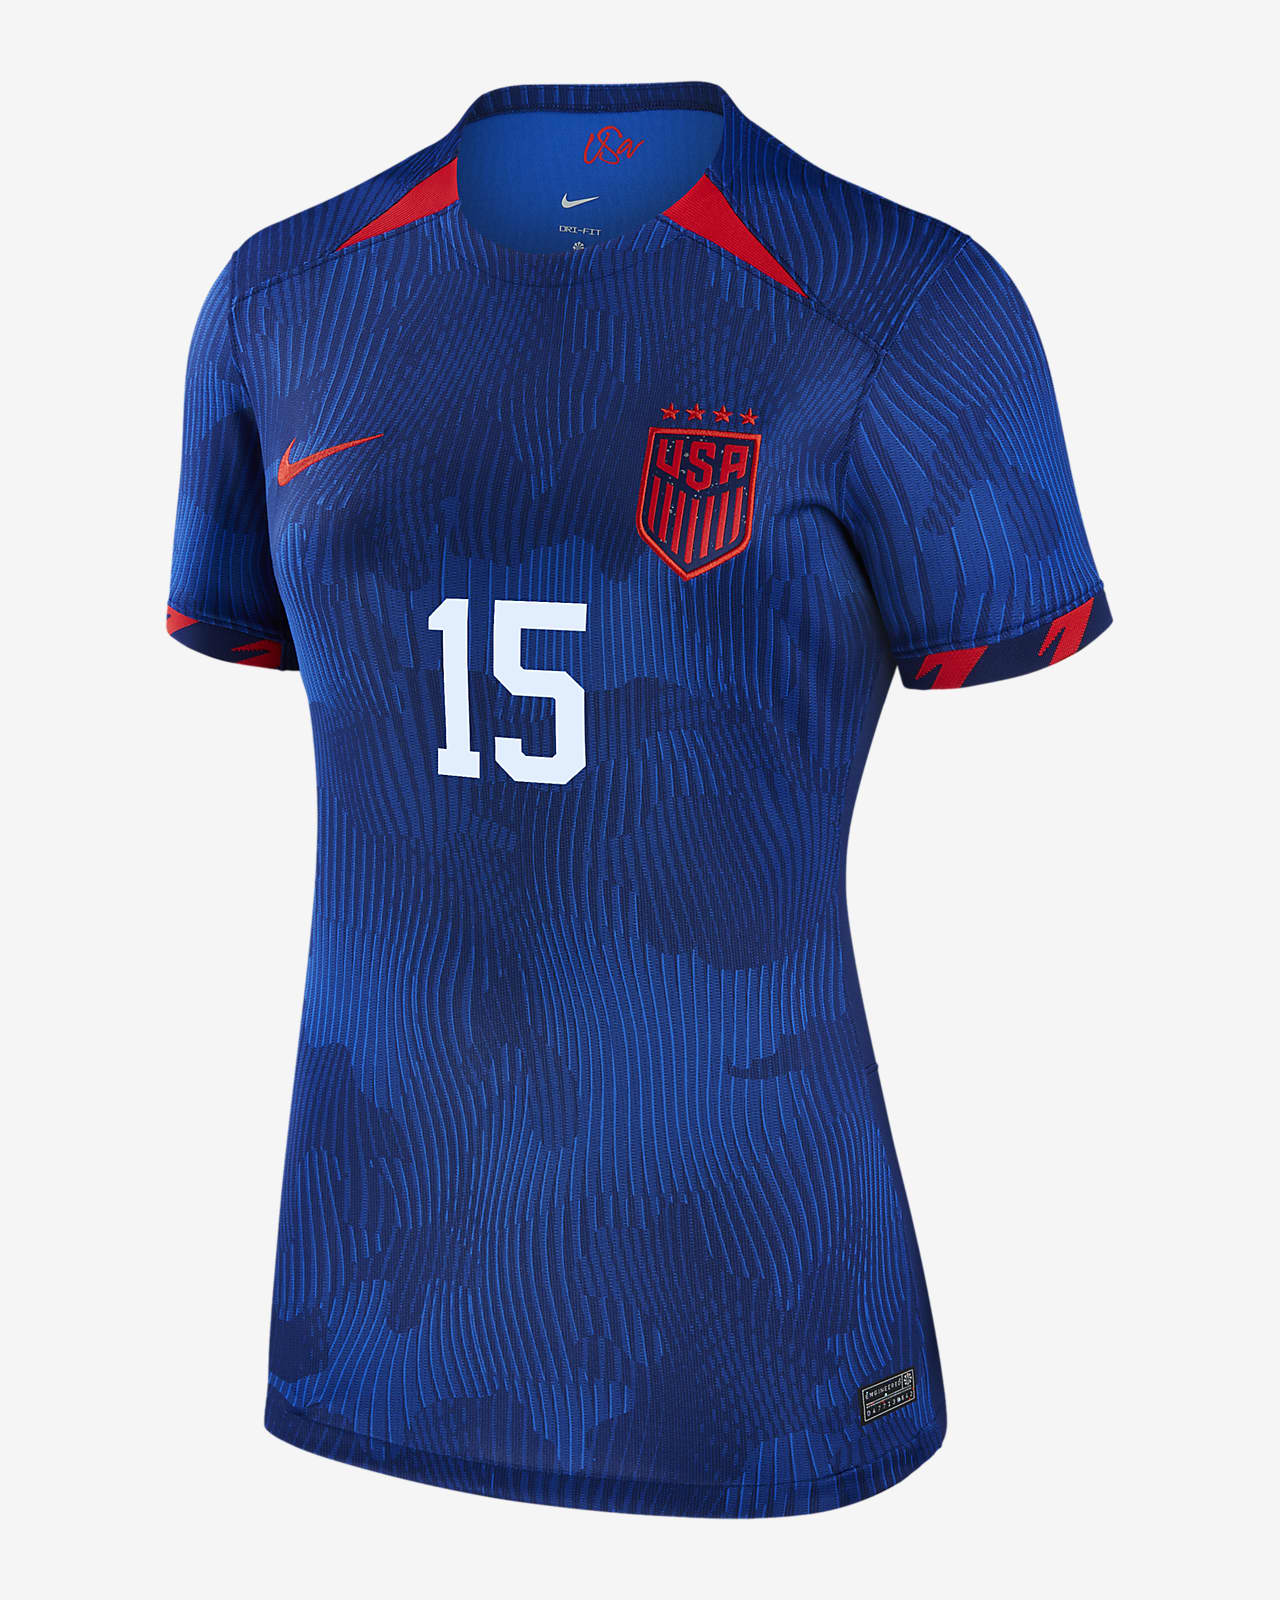 Jersey de fútbol Nike Dri-FIT de la selección nacional de fútbol femenino  de Estados Unidos (4 estrellas) visitante 2023 Stadium visitante para mujer.